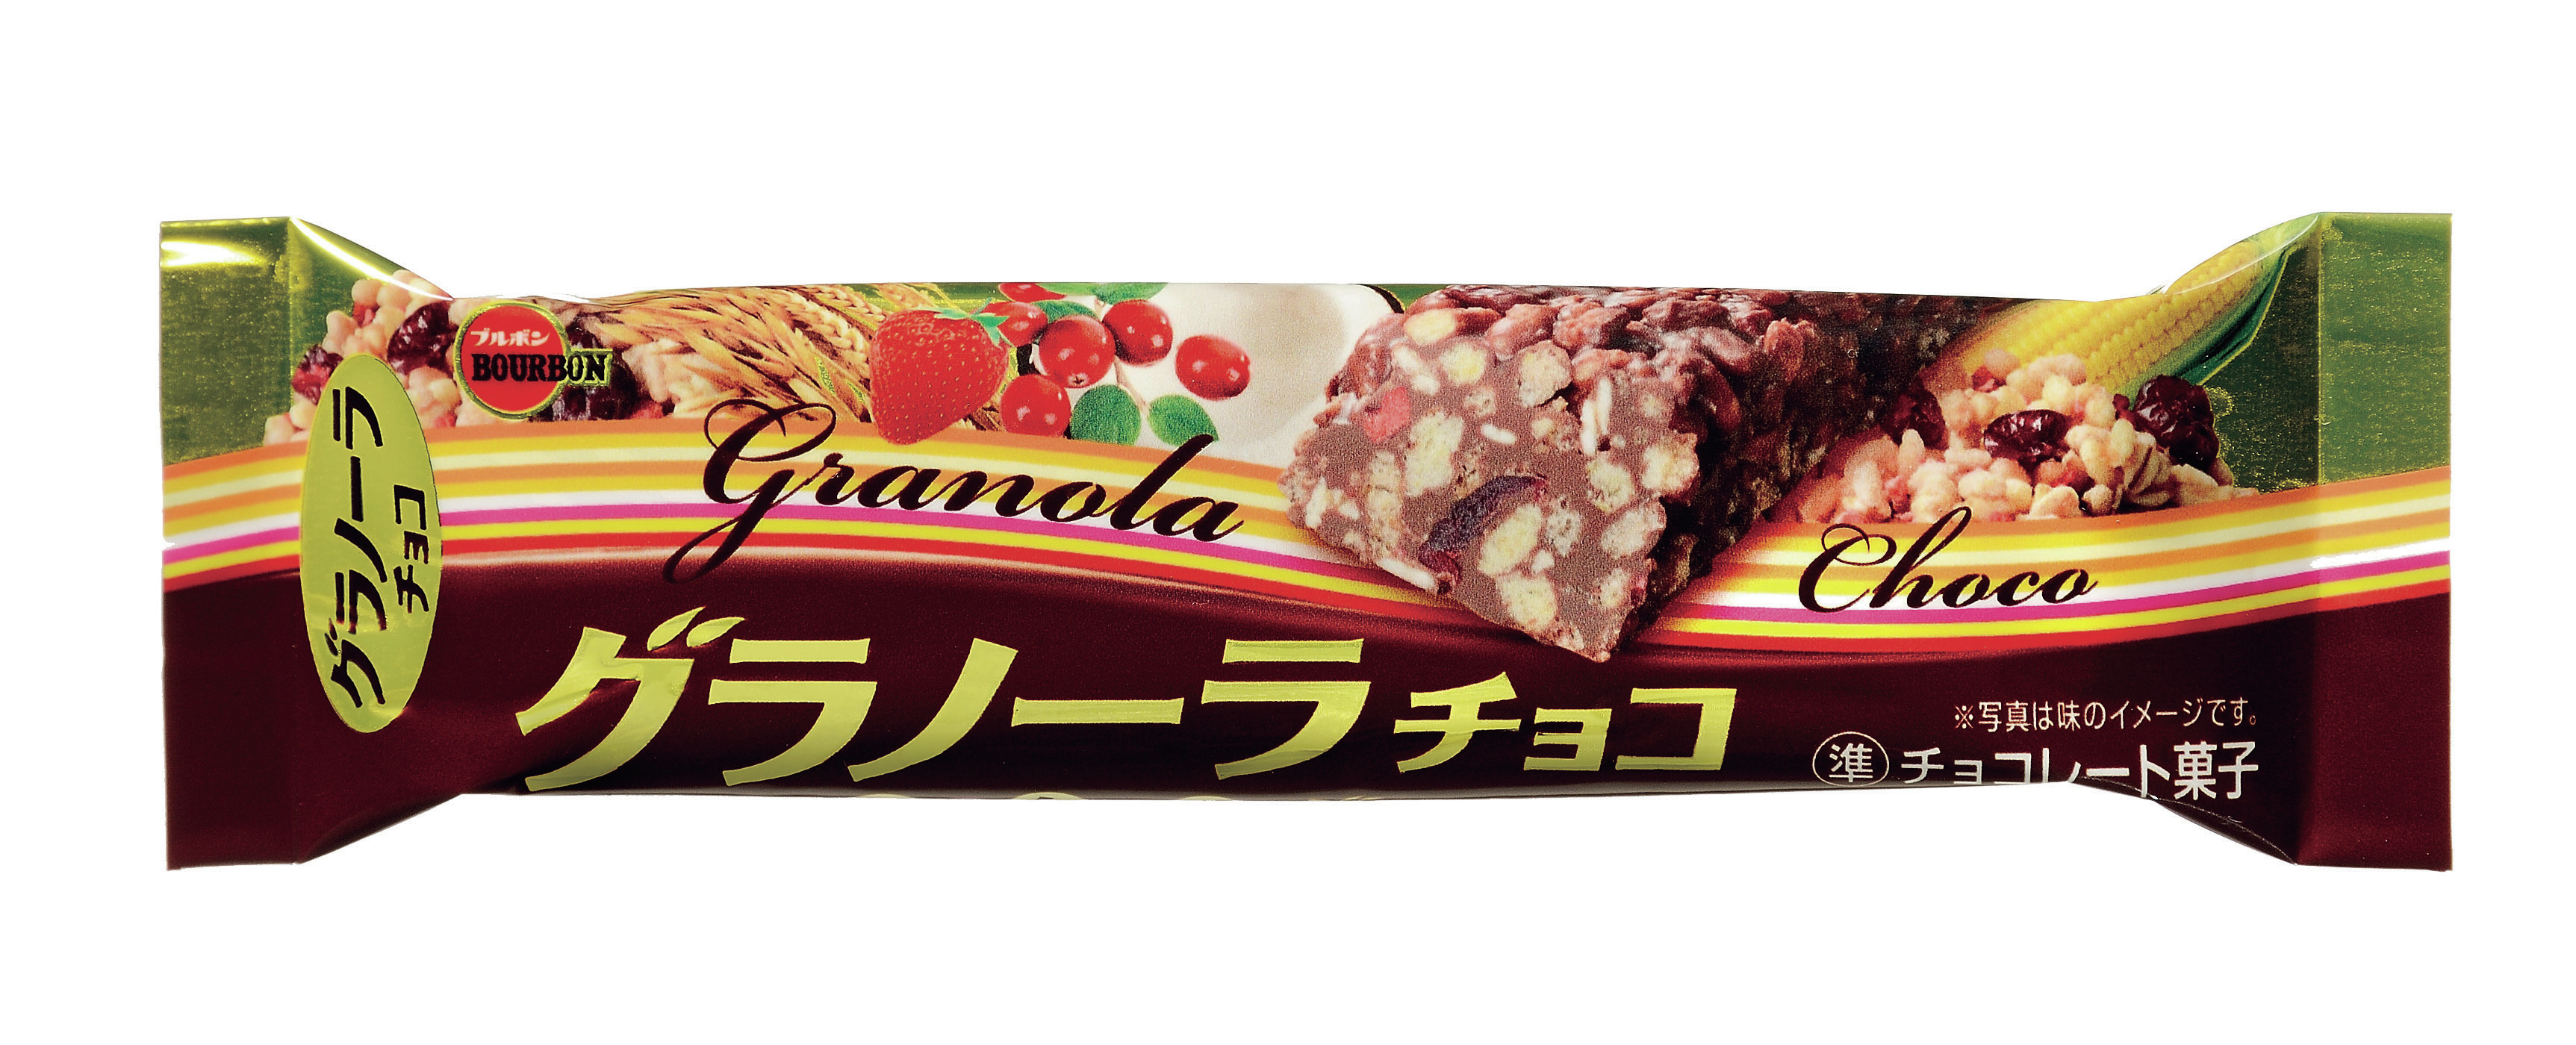 ブルボン バーシリーズ より グラノーラチョコ を9月22日 火 祝 に新発売 チョコレート ザクザクグラノーラ 株式会社ブルボンのプレスリリース